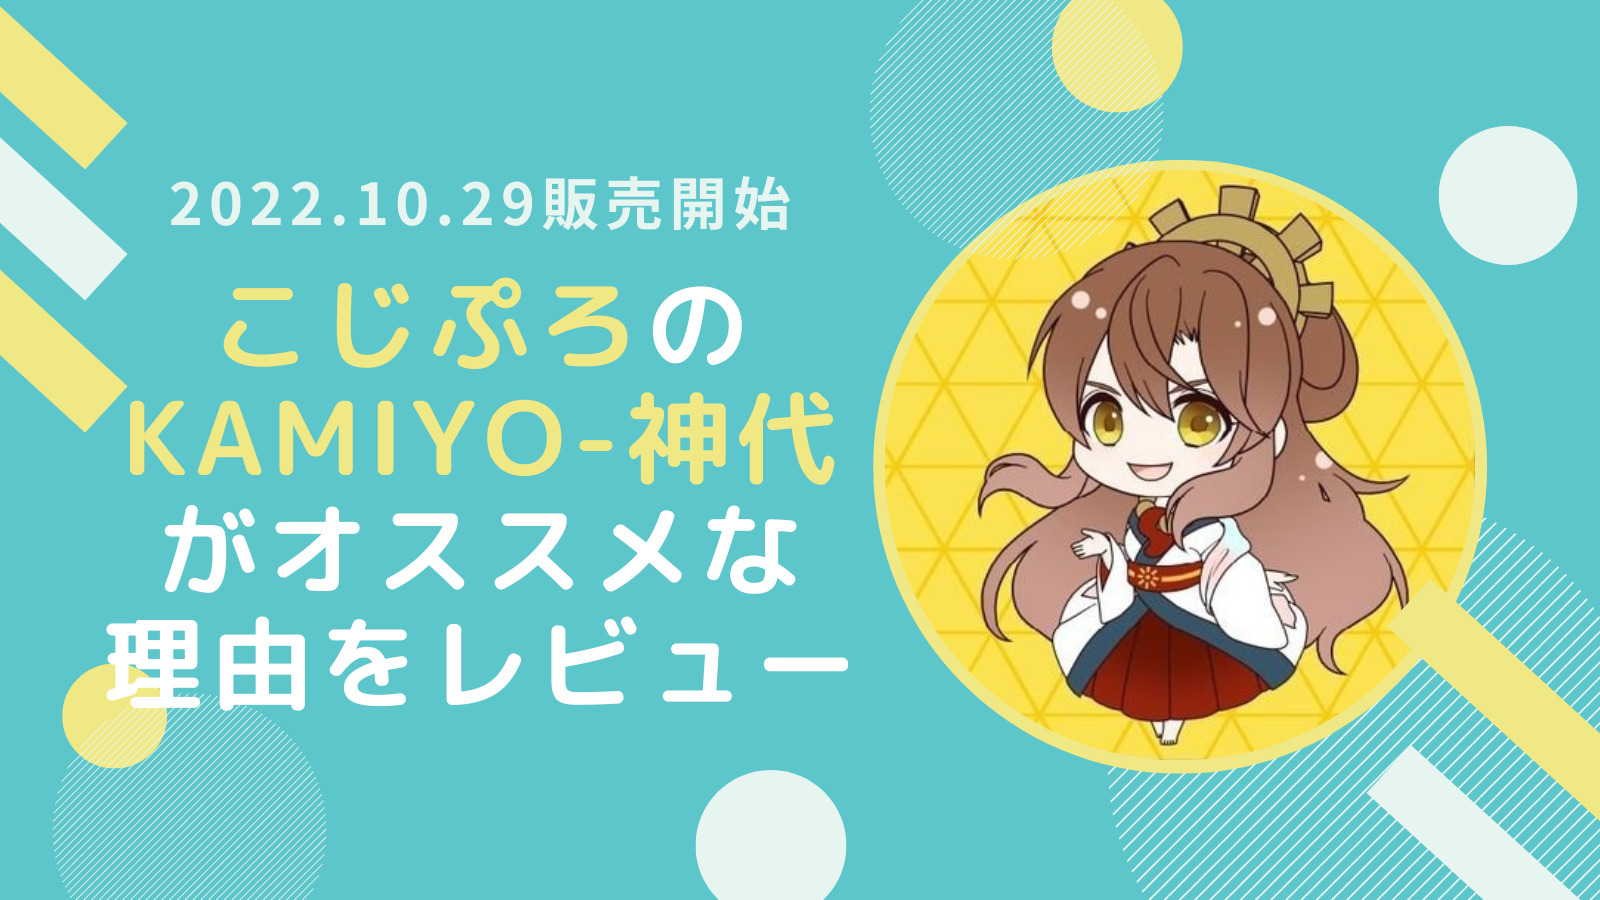 10/29販売のNFT「KAMIYO-神代」がオススメな3つの理由